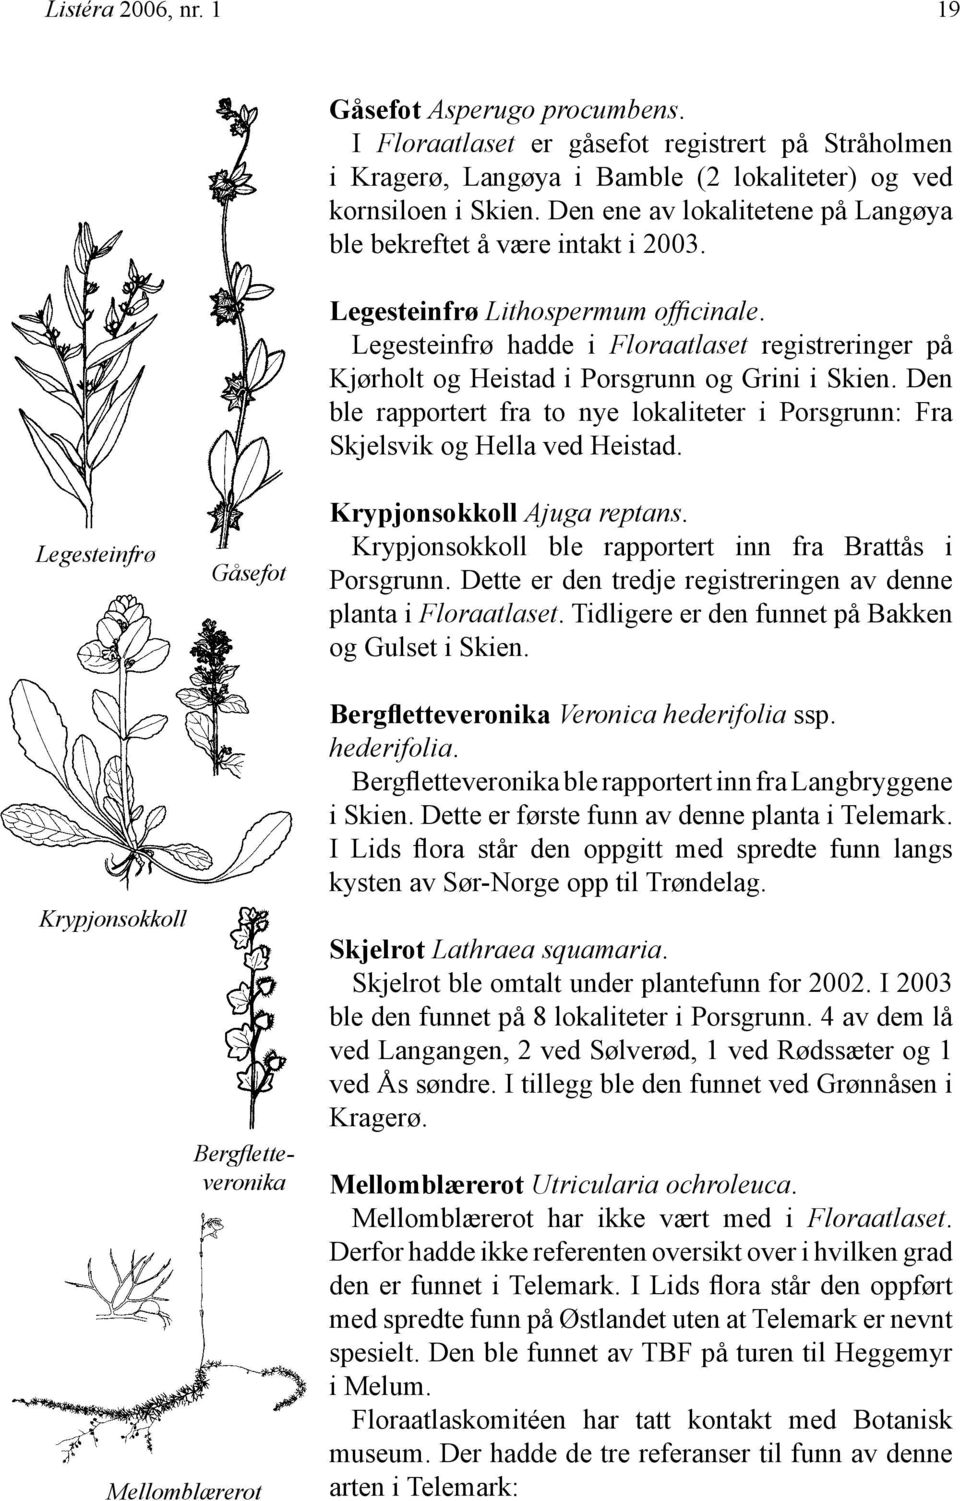 Legesteinfrø hadde i Floraatlaset registreringer på Kjørholt og Heistad i Porsgrunn og Grini i Skien. Den ble rapportert fra to nye lokaliteter i Porsgrunn: Fra Skjelsvik og Hella ved Heistad.